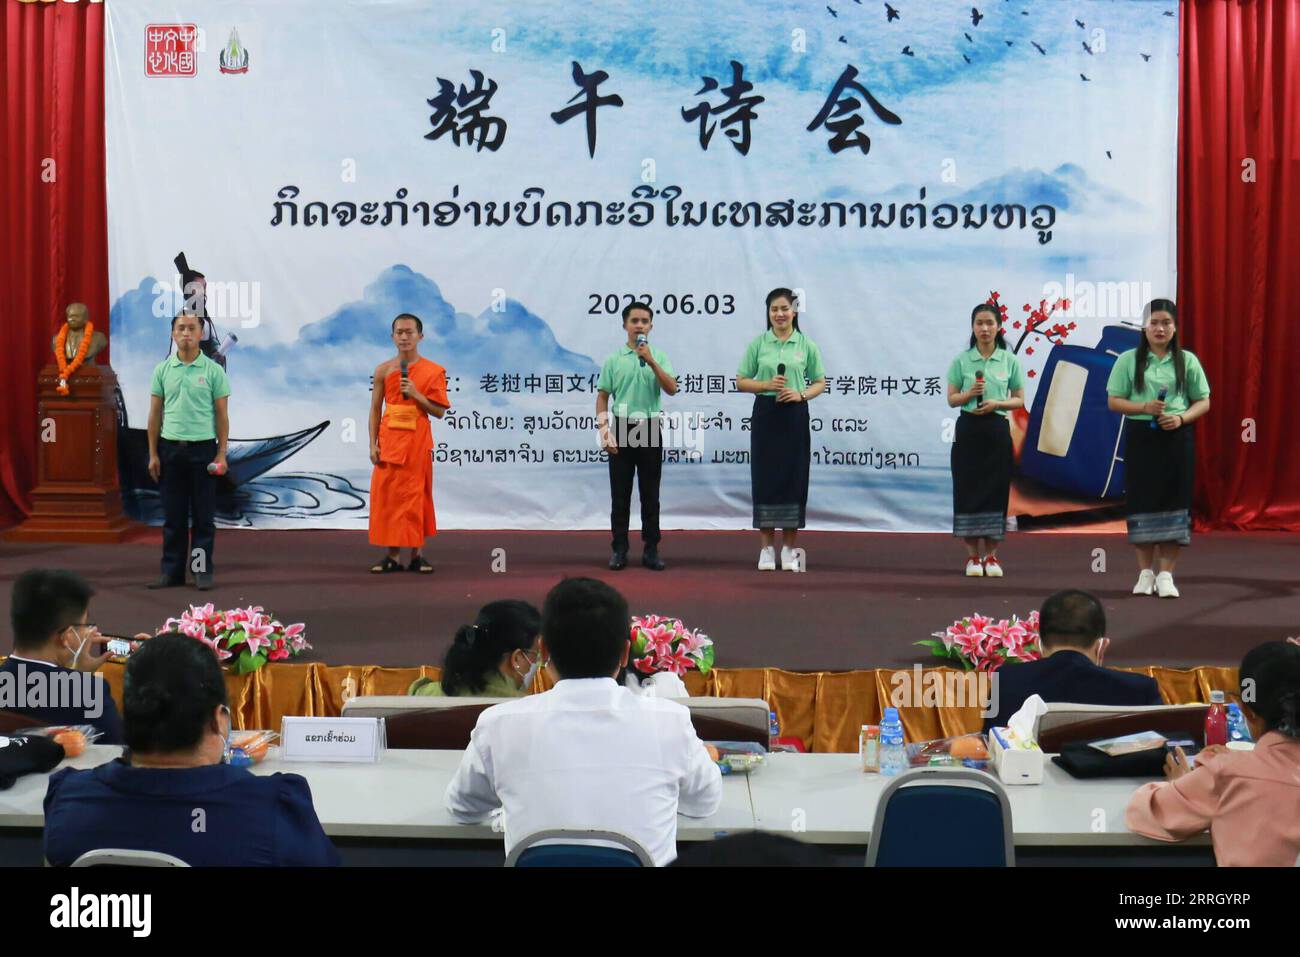 220605 -- VIENTIANE, 5. Juni 2022 -- laotische Studenten treten während einer chinesischen Gedichtrezitationsfeier anlässlich des Dragon Boat Festivals an der Nationalen Universität von Laos in Vientiane, Laos, am 3. Juni 2022 auf. Foto von /Xinhua LAOS-VIENTIANE-CHINESISCHE DICHTUNG KaikeoxSaiyasane PUBLICATIONxNOTxINxCHN Stockfoto